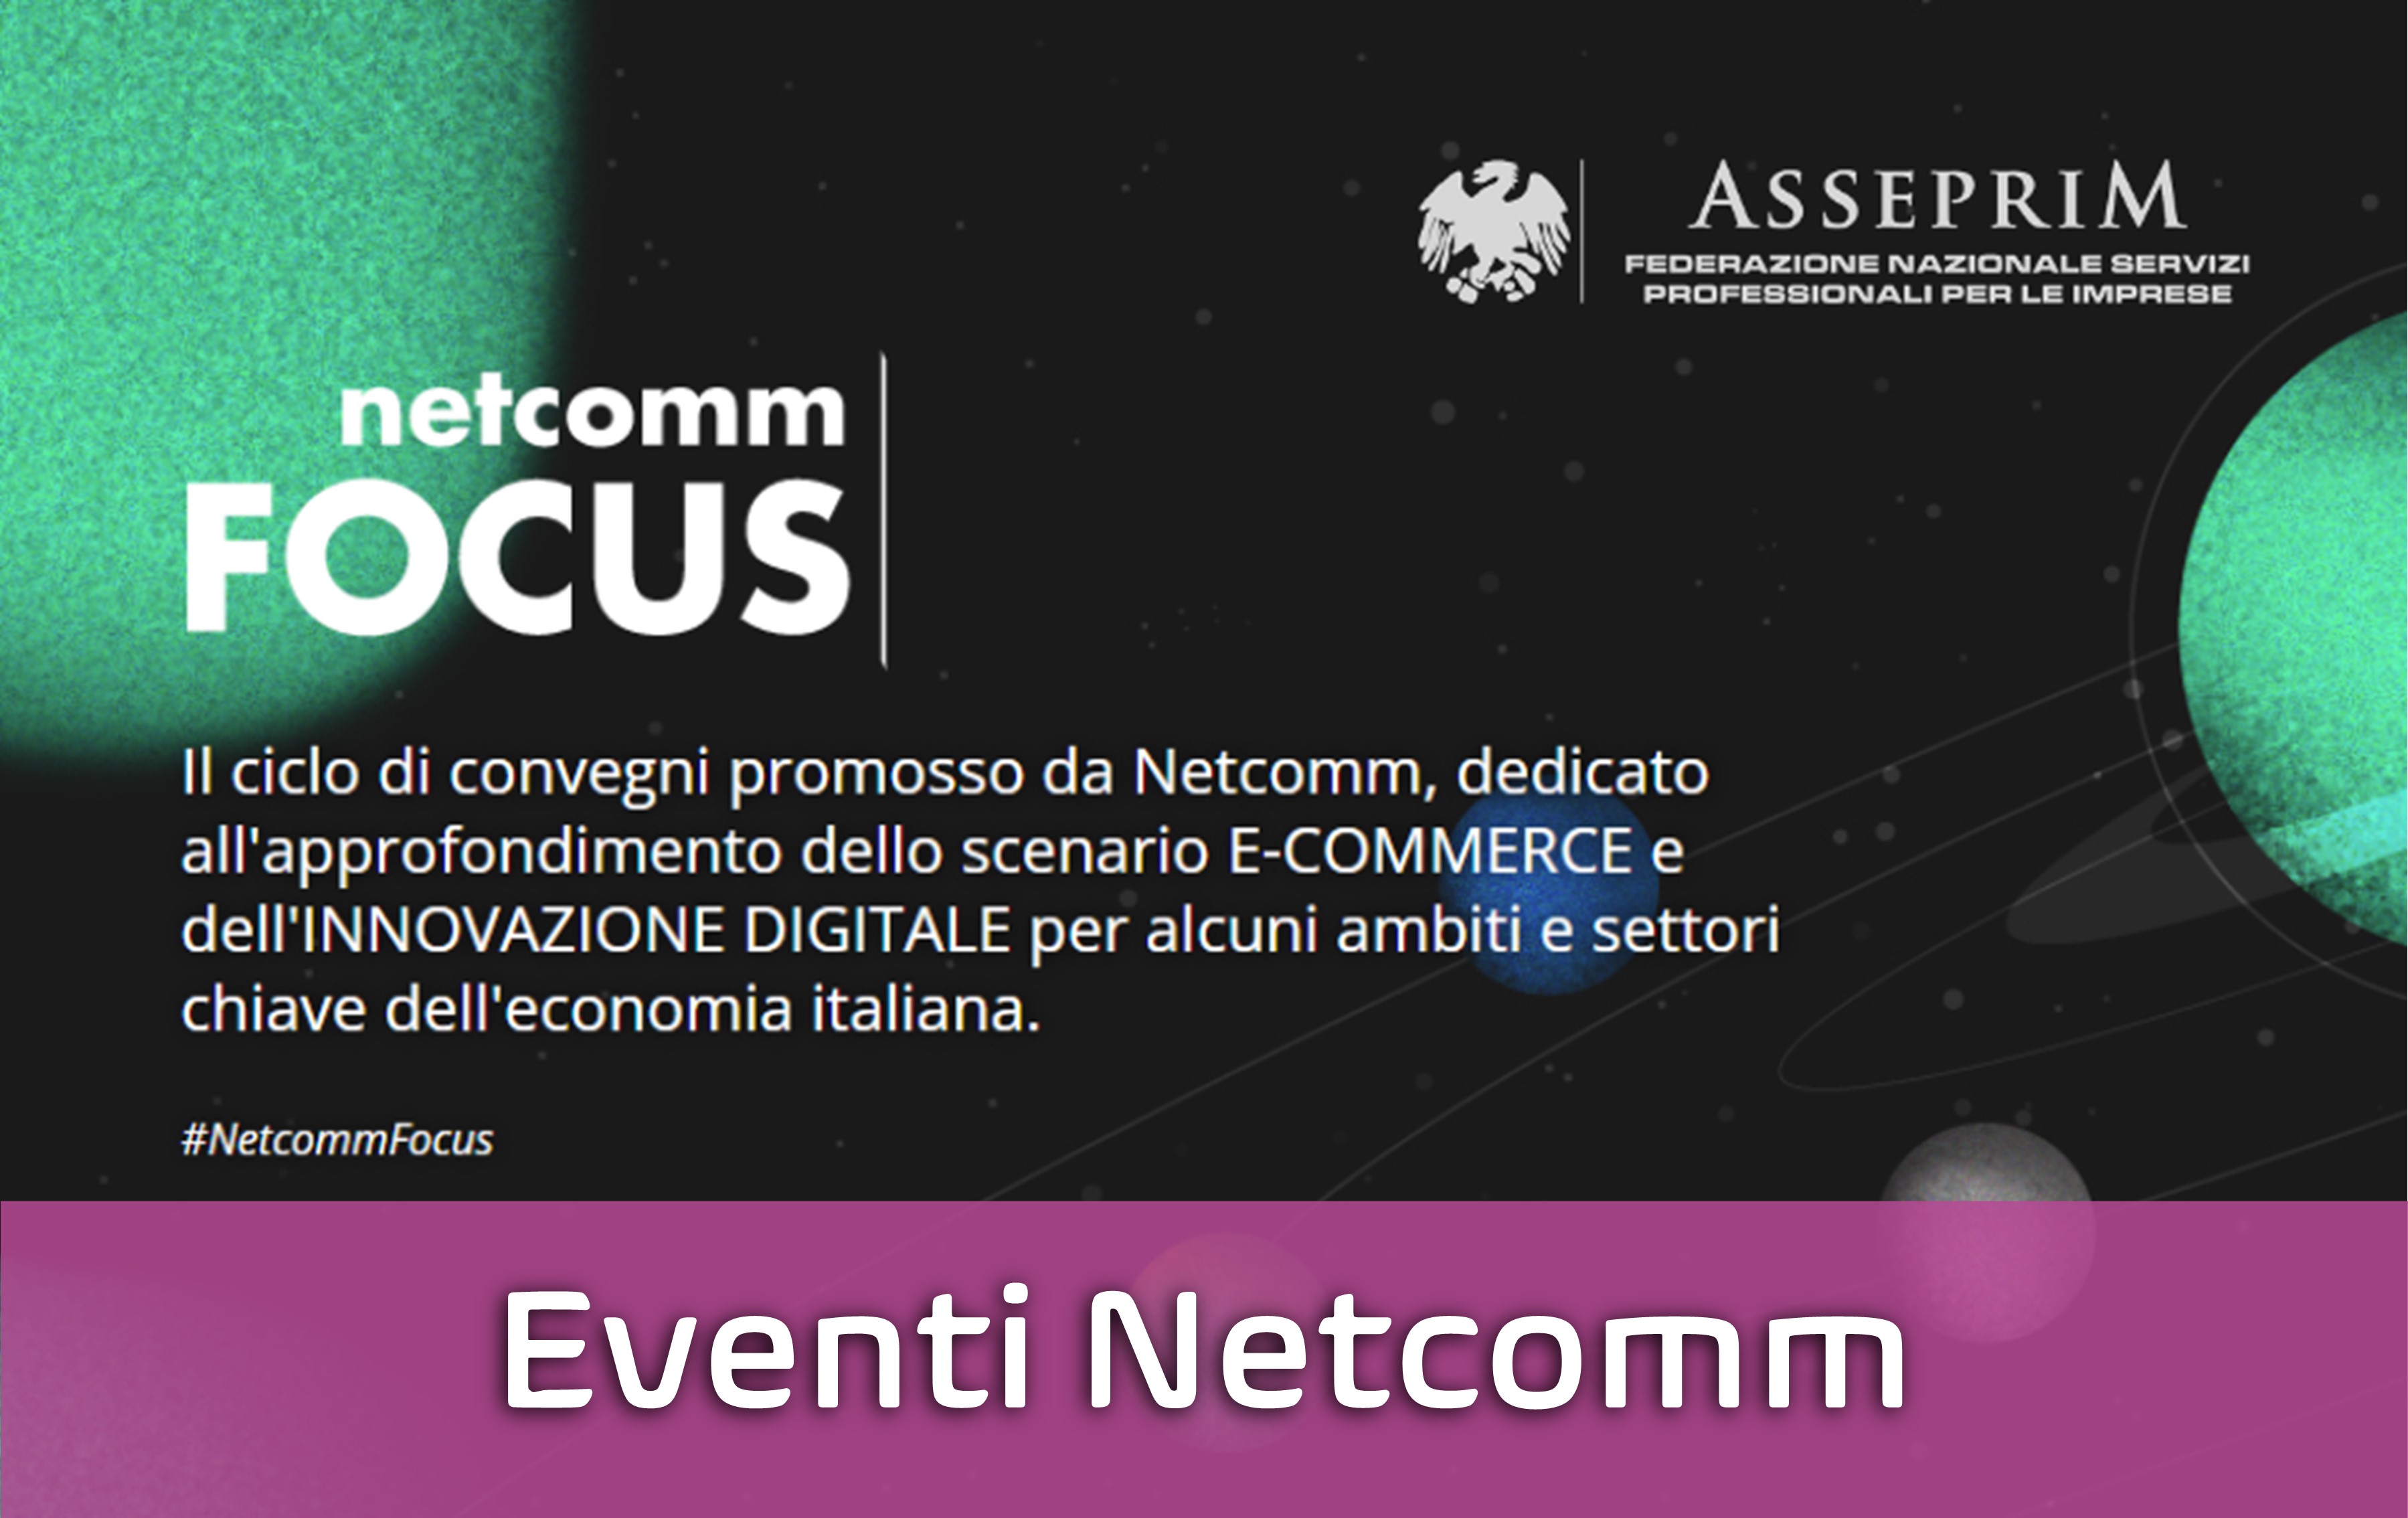 Netcomm focus eventi